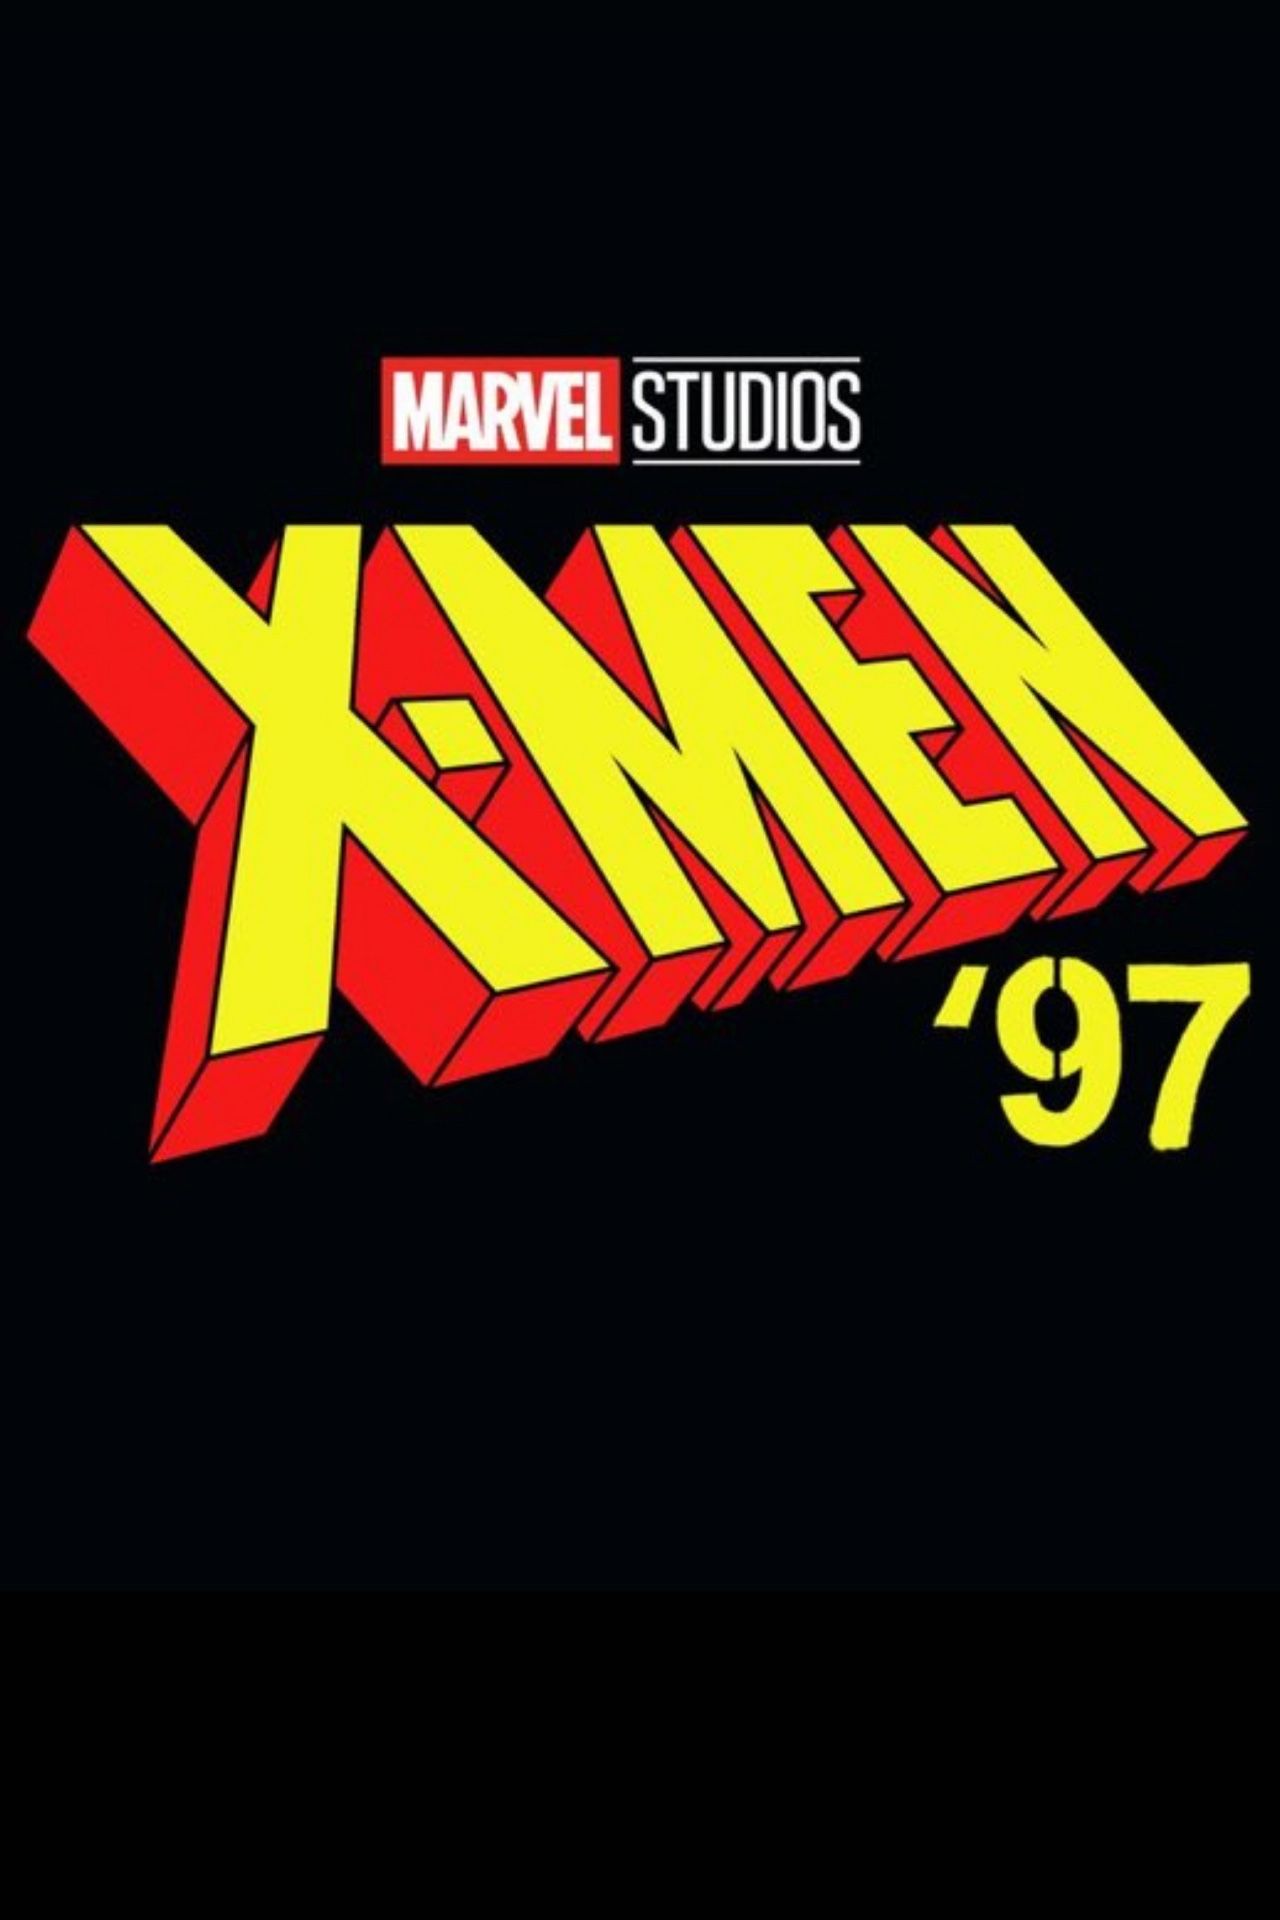 The official X-Men 97 logo